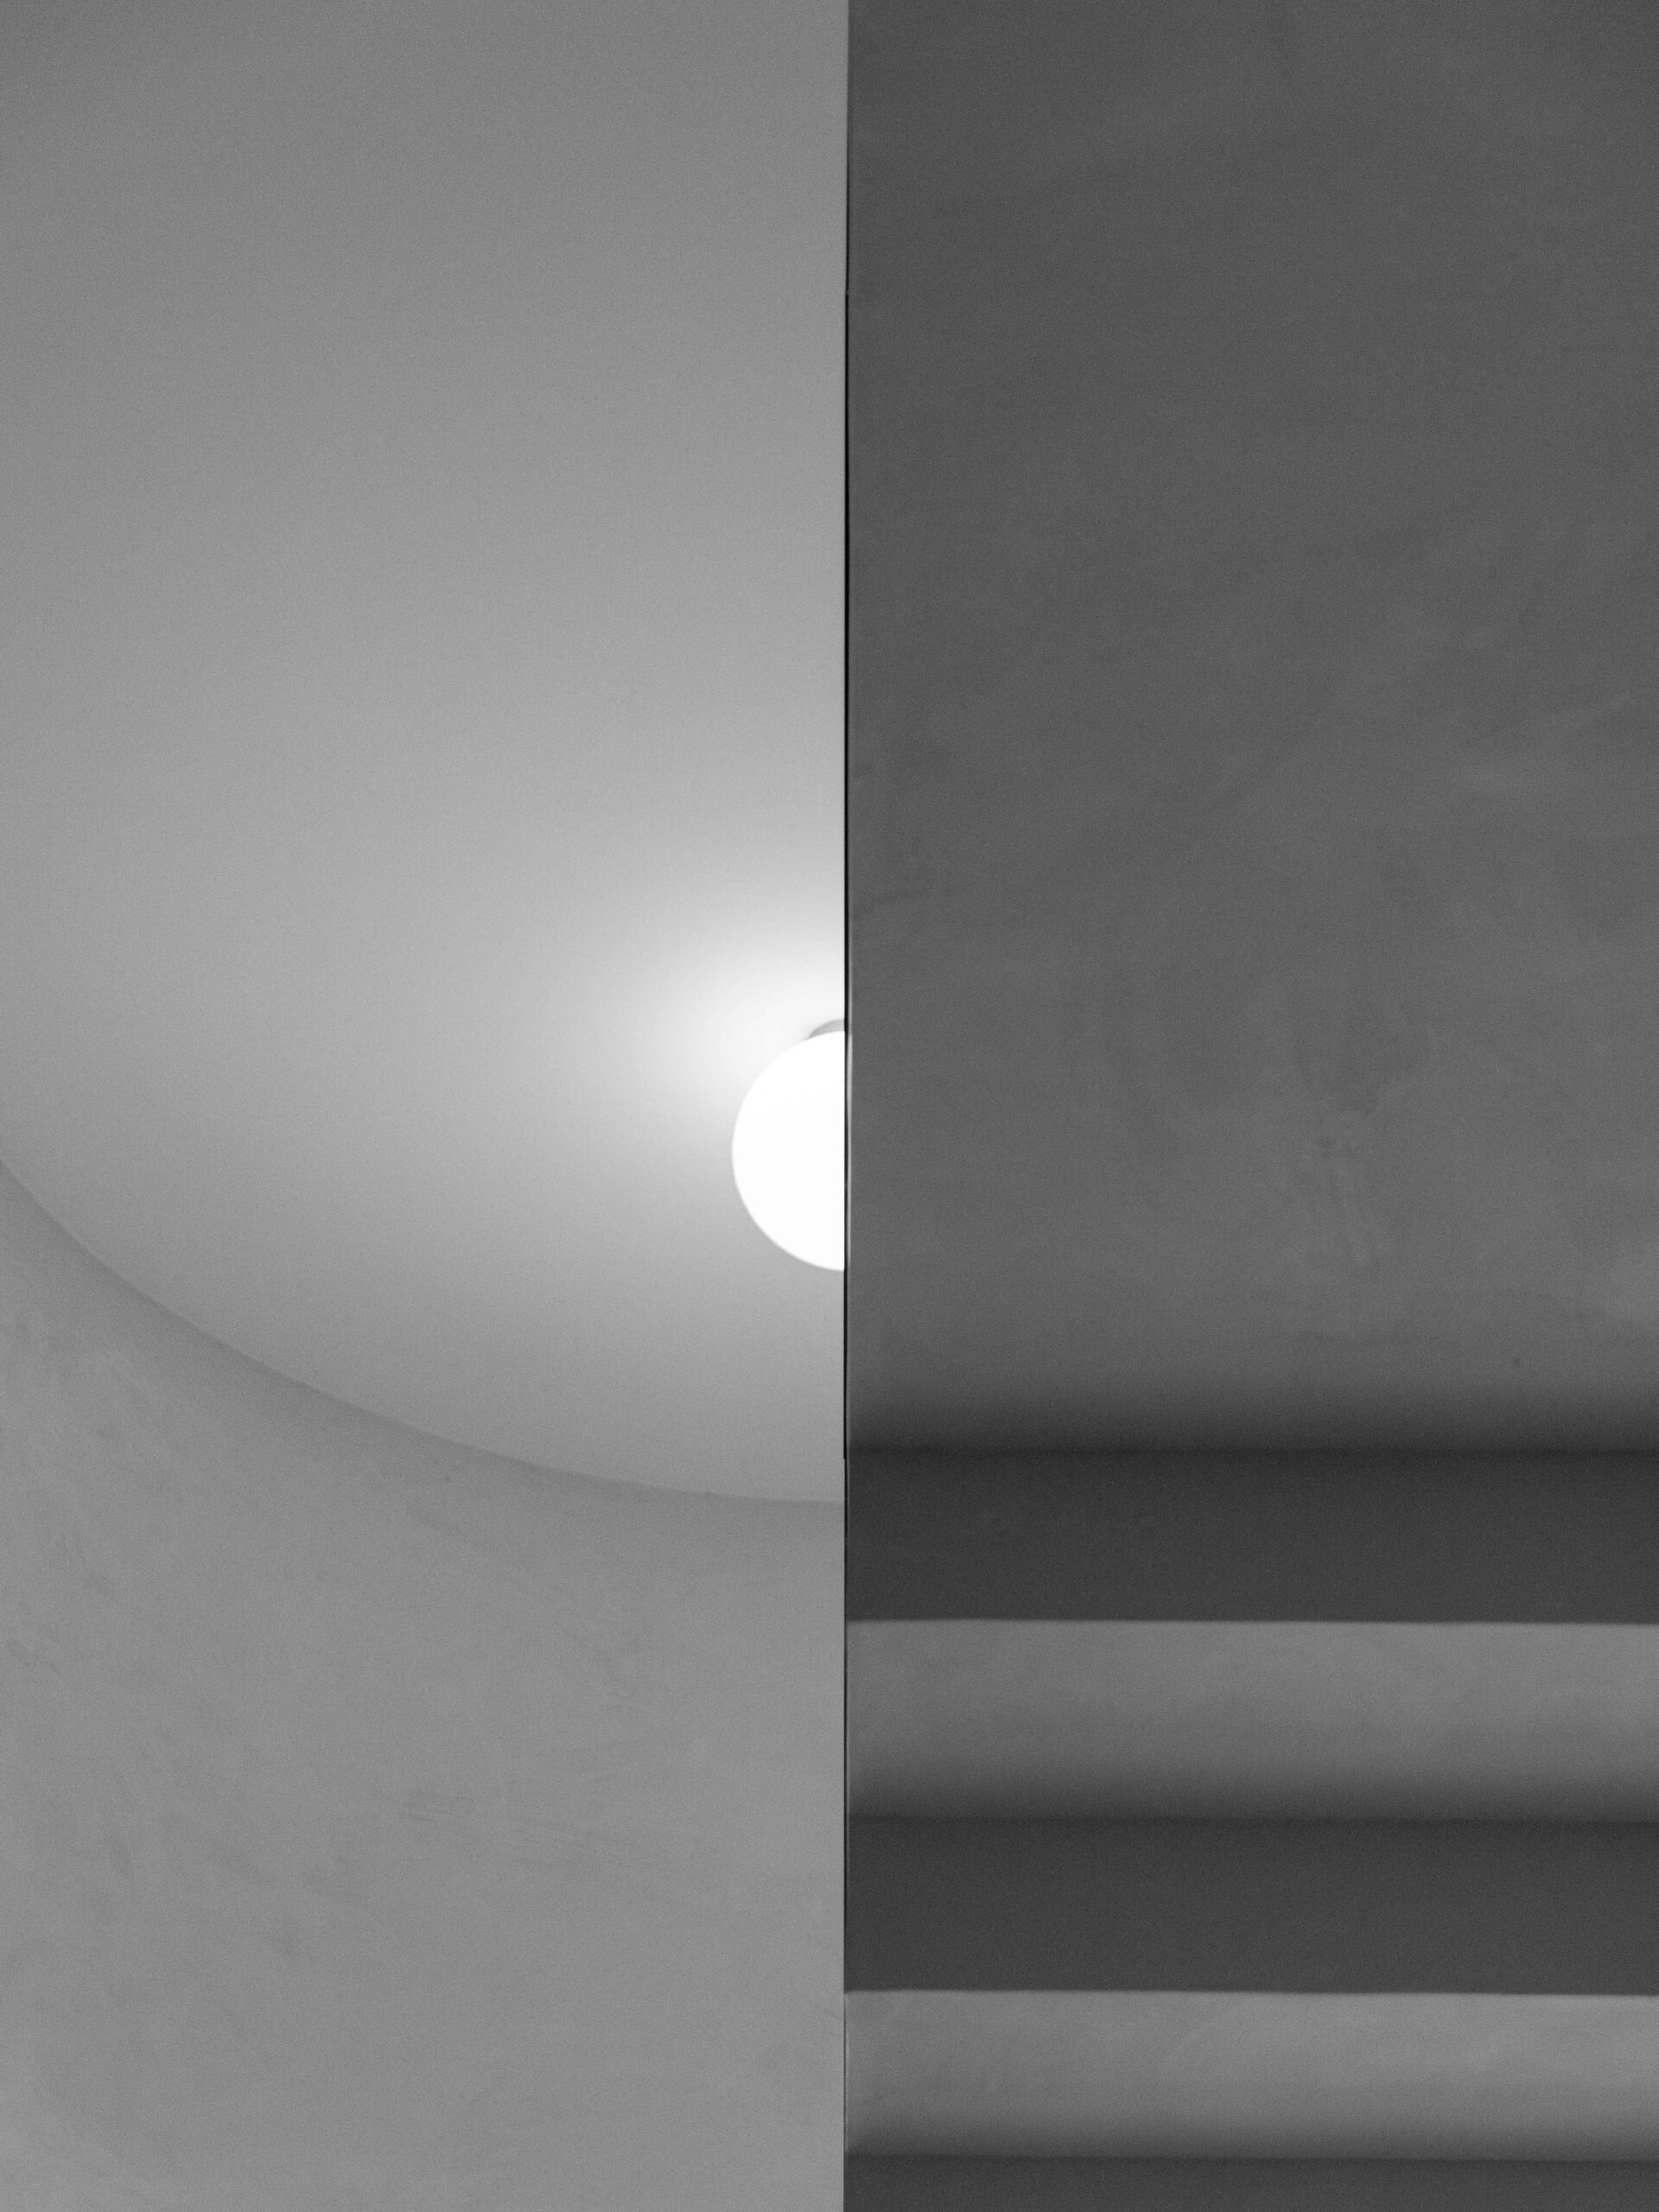 ©Aurélie Marcellak | Le couloir et l'escalier de la Villa cavrois